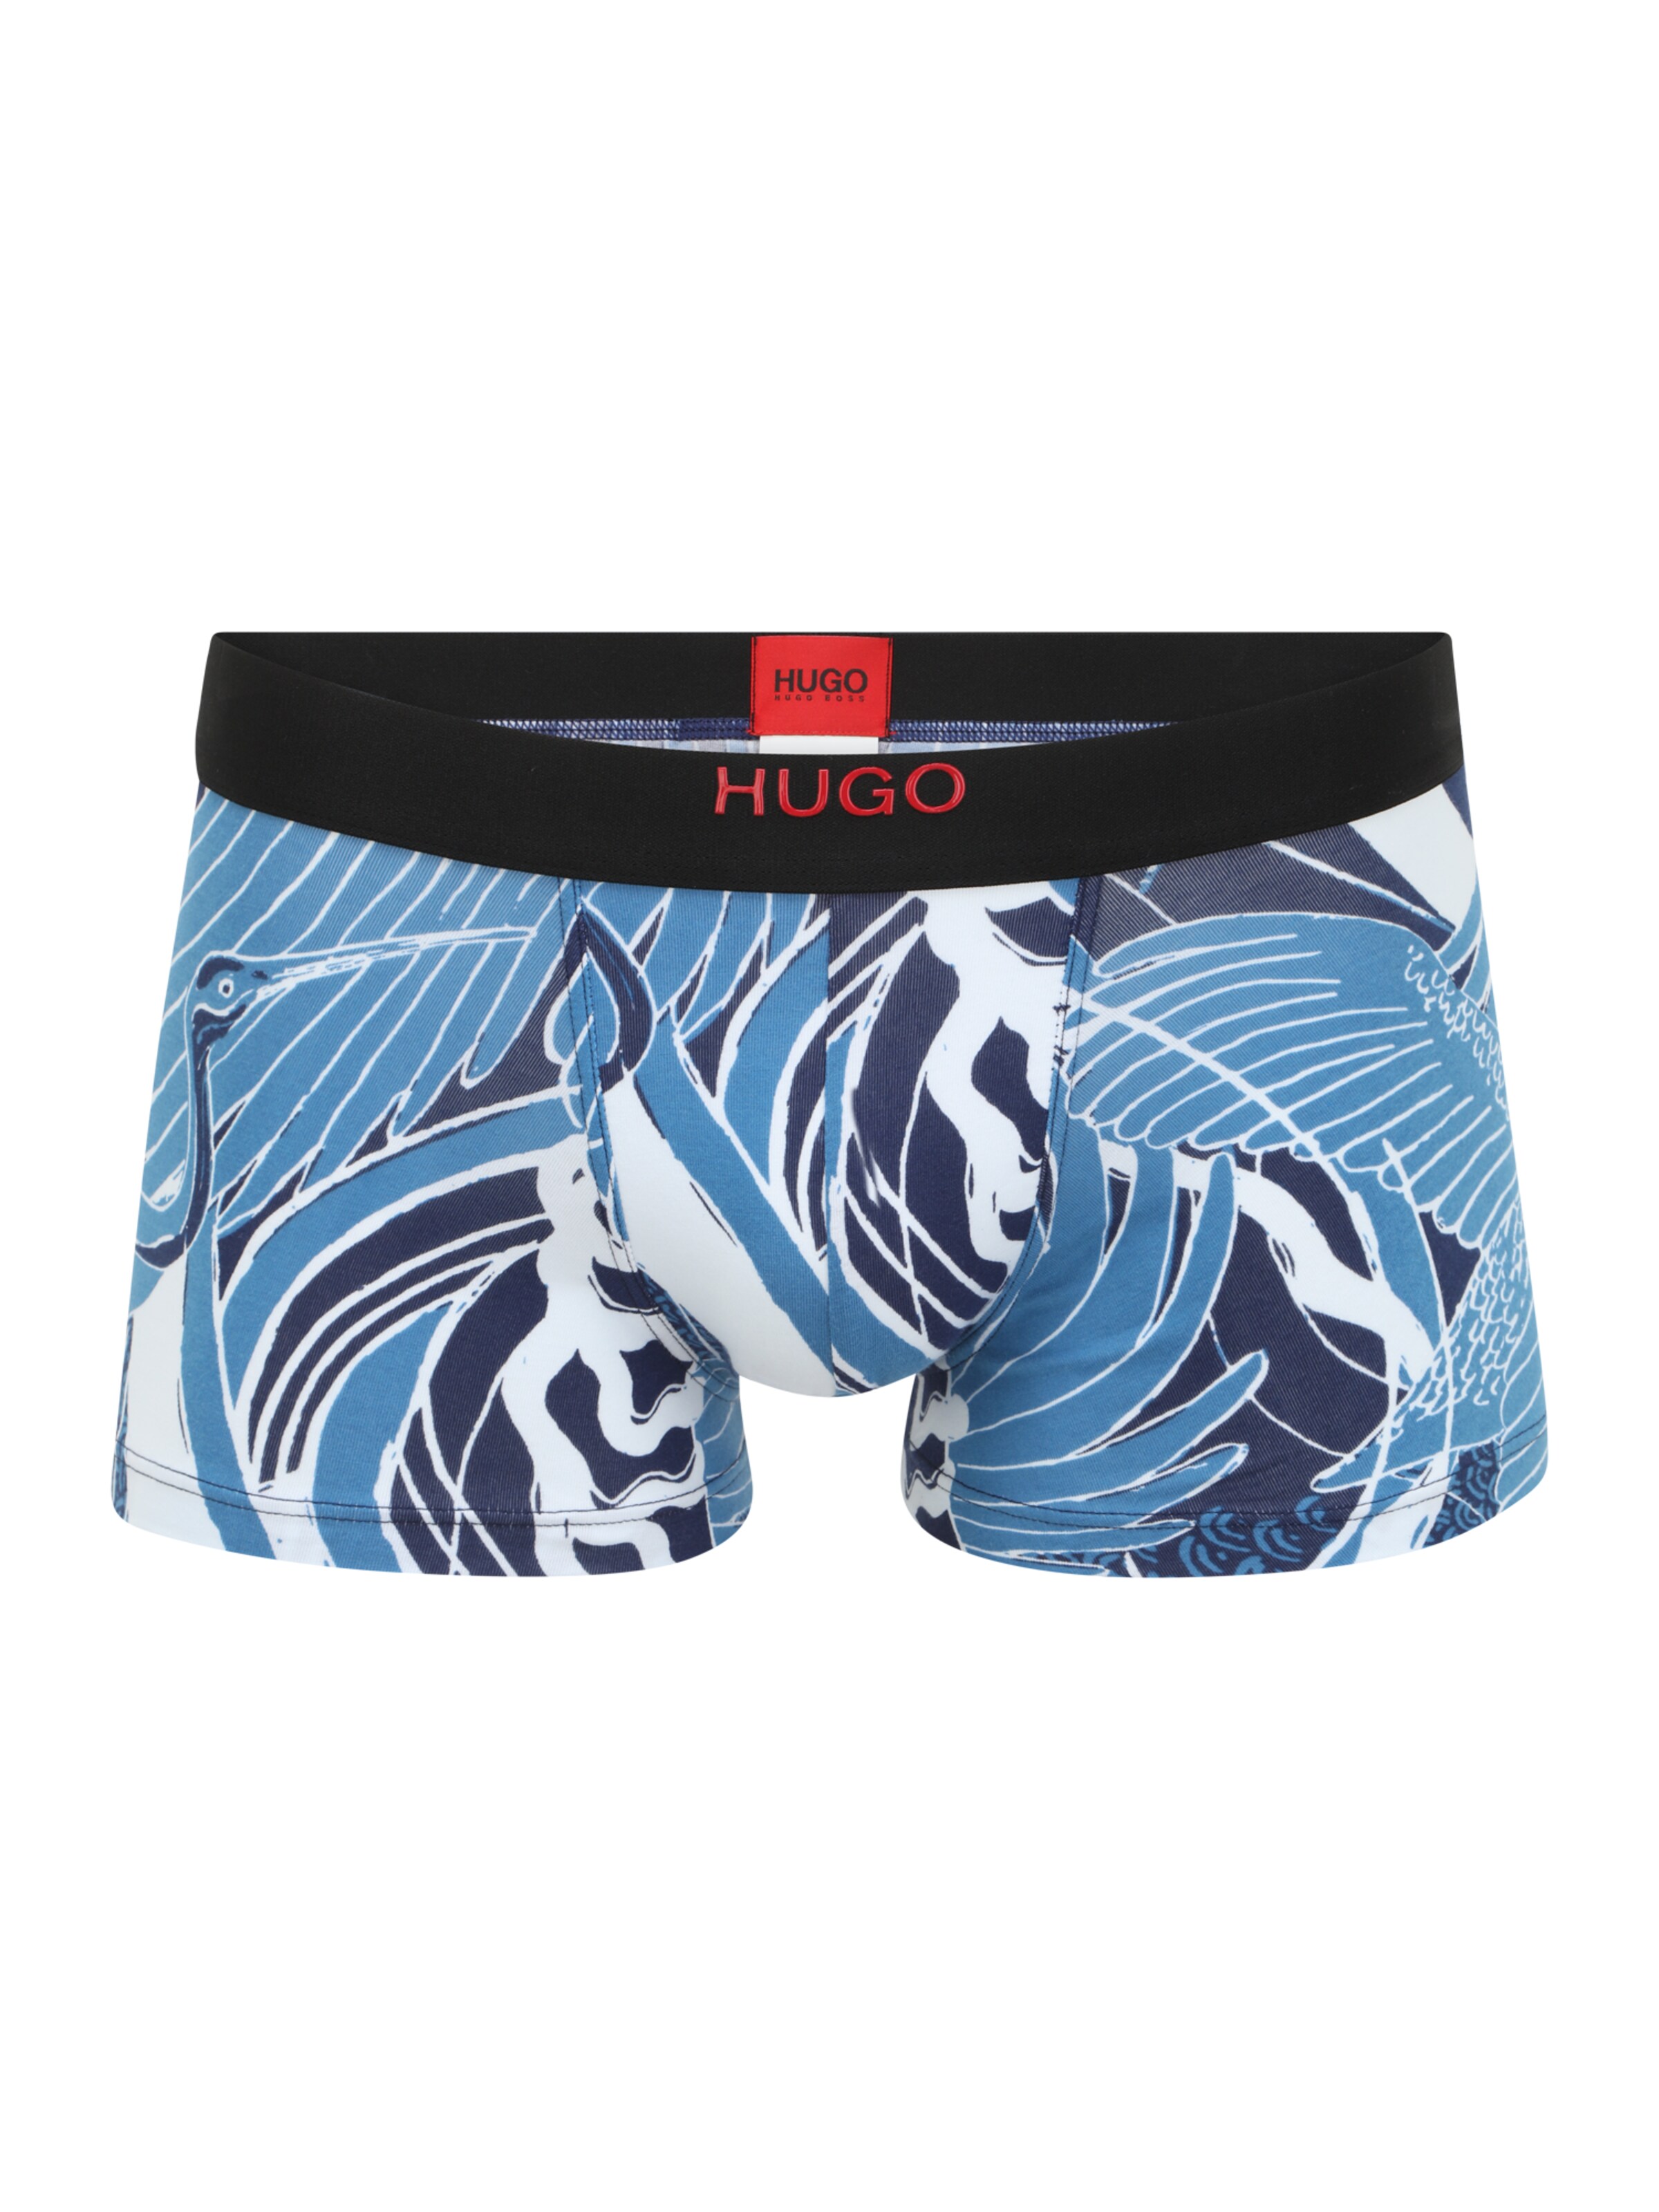 Männer Wäsche HUGO Boxershorts in Rauchblau, Nachtblau - MR41065